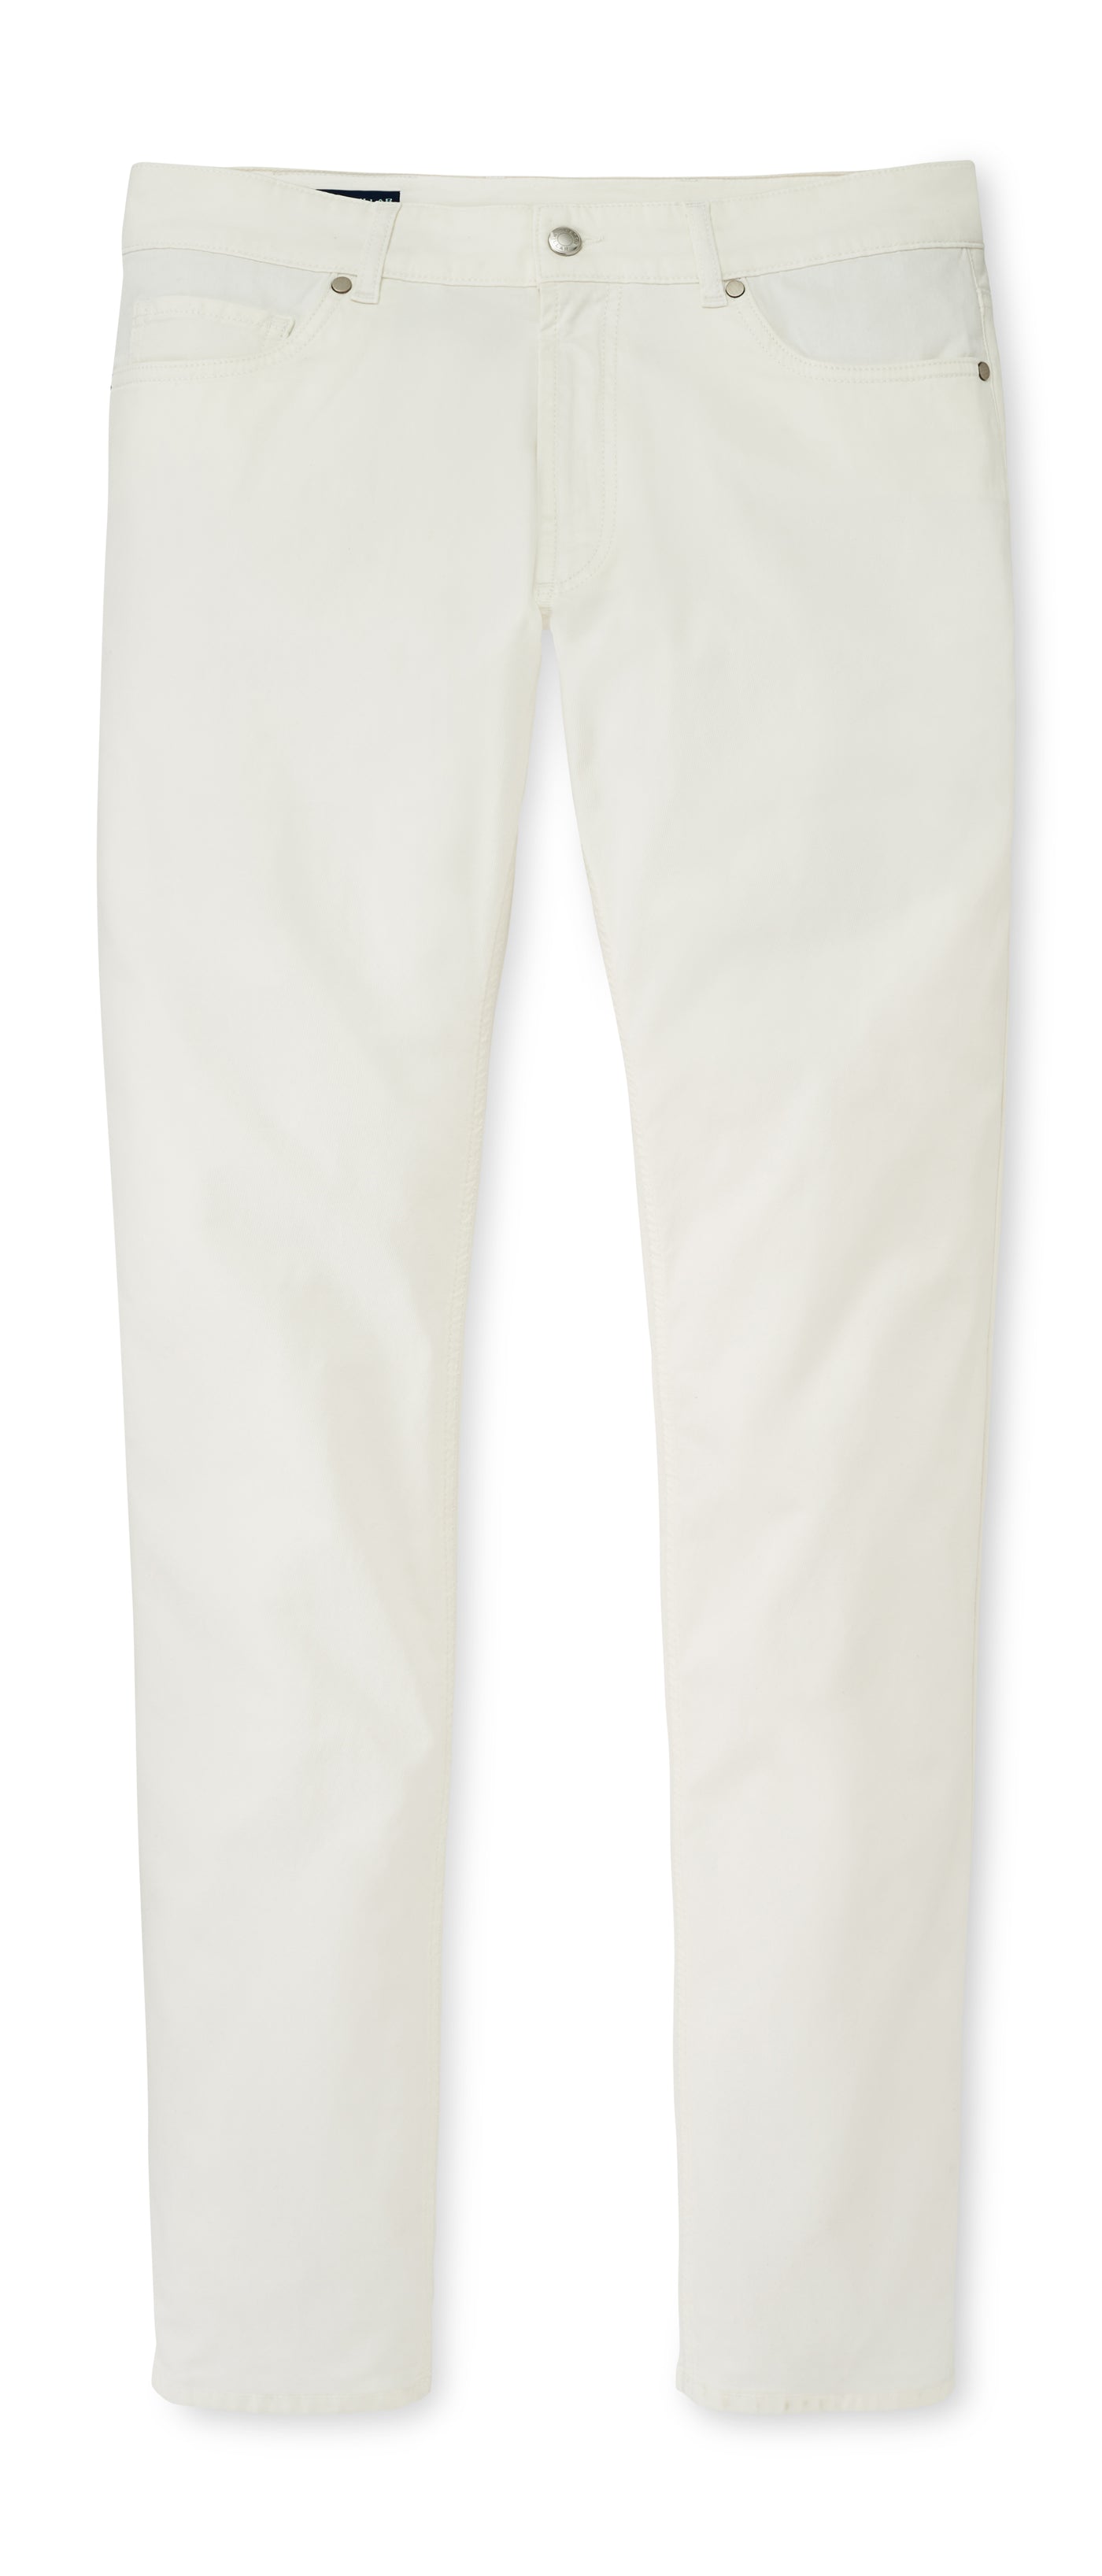 Wayfare Five-Pocket Pant in White Coral